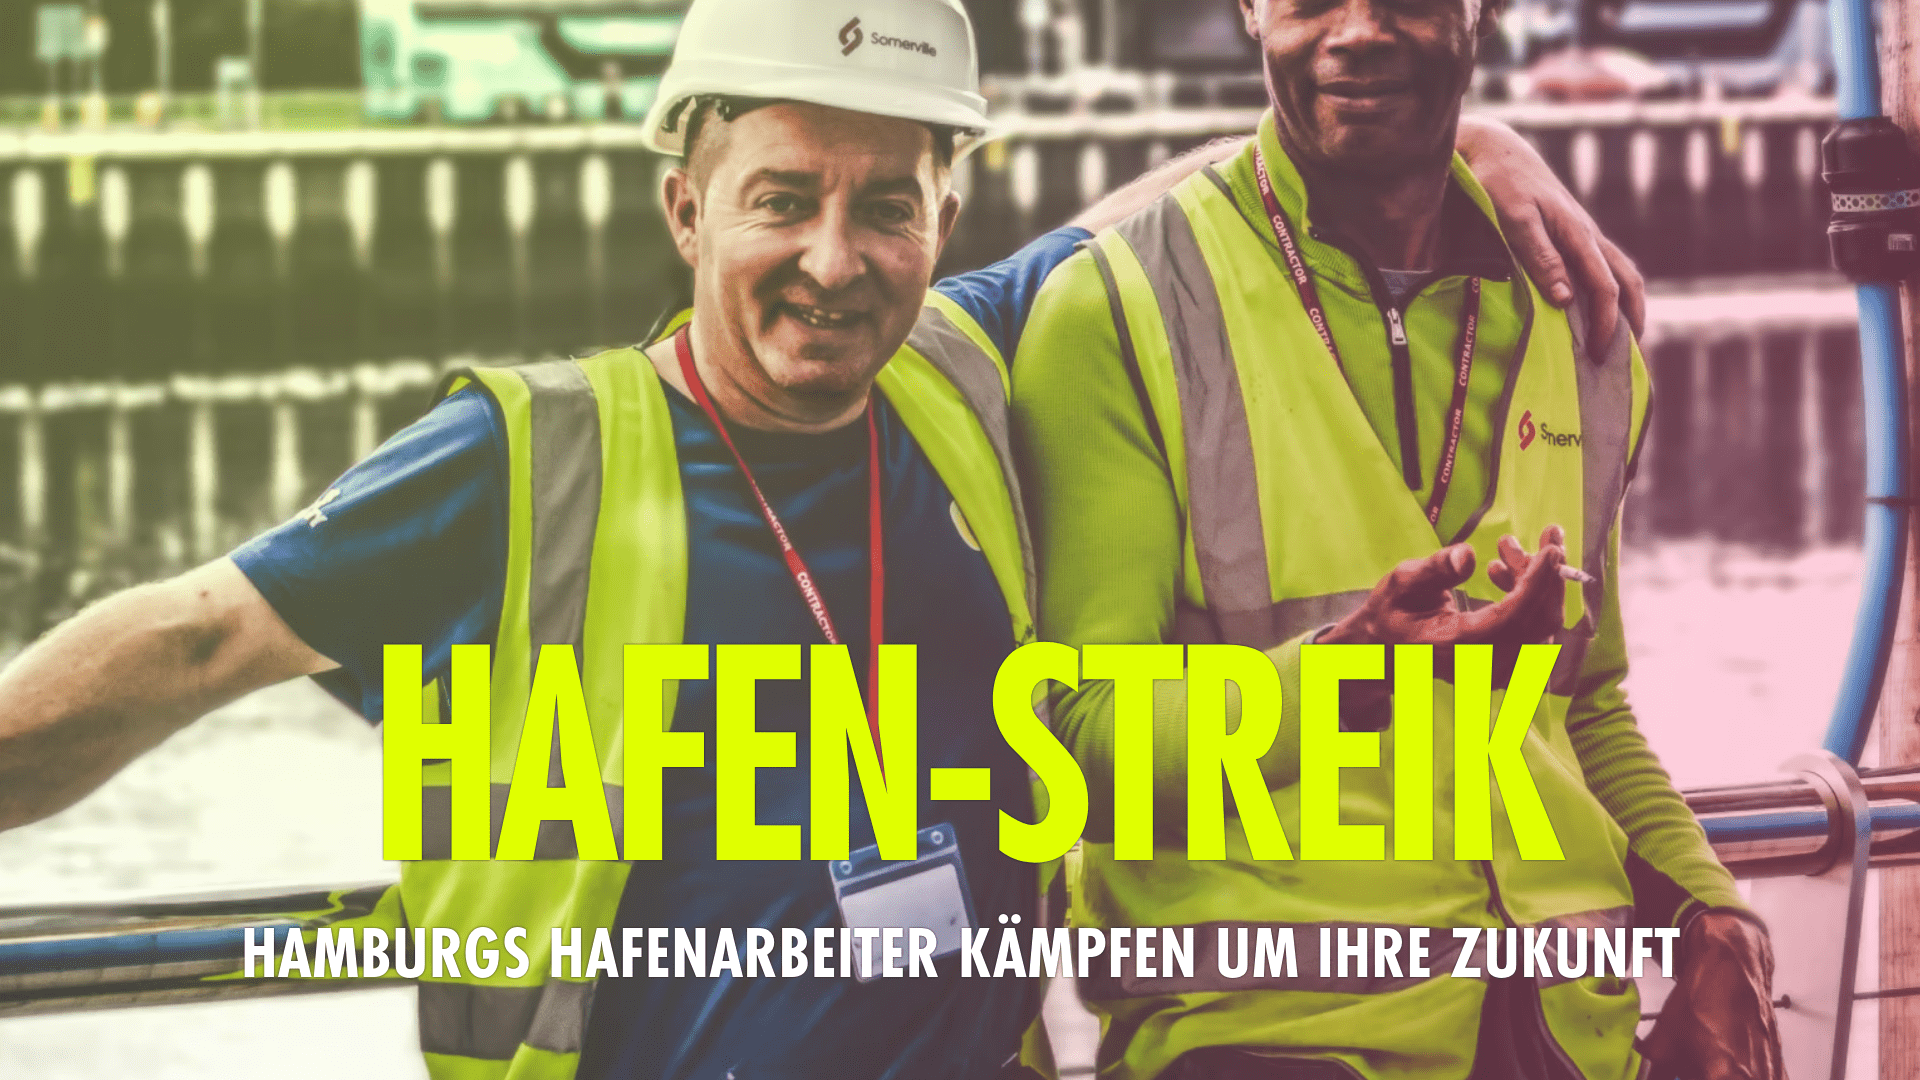 Hamburger Hafenarbeiter streiken für ihgre Zukunft